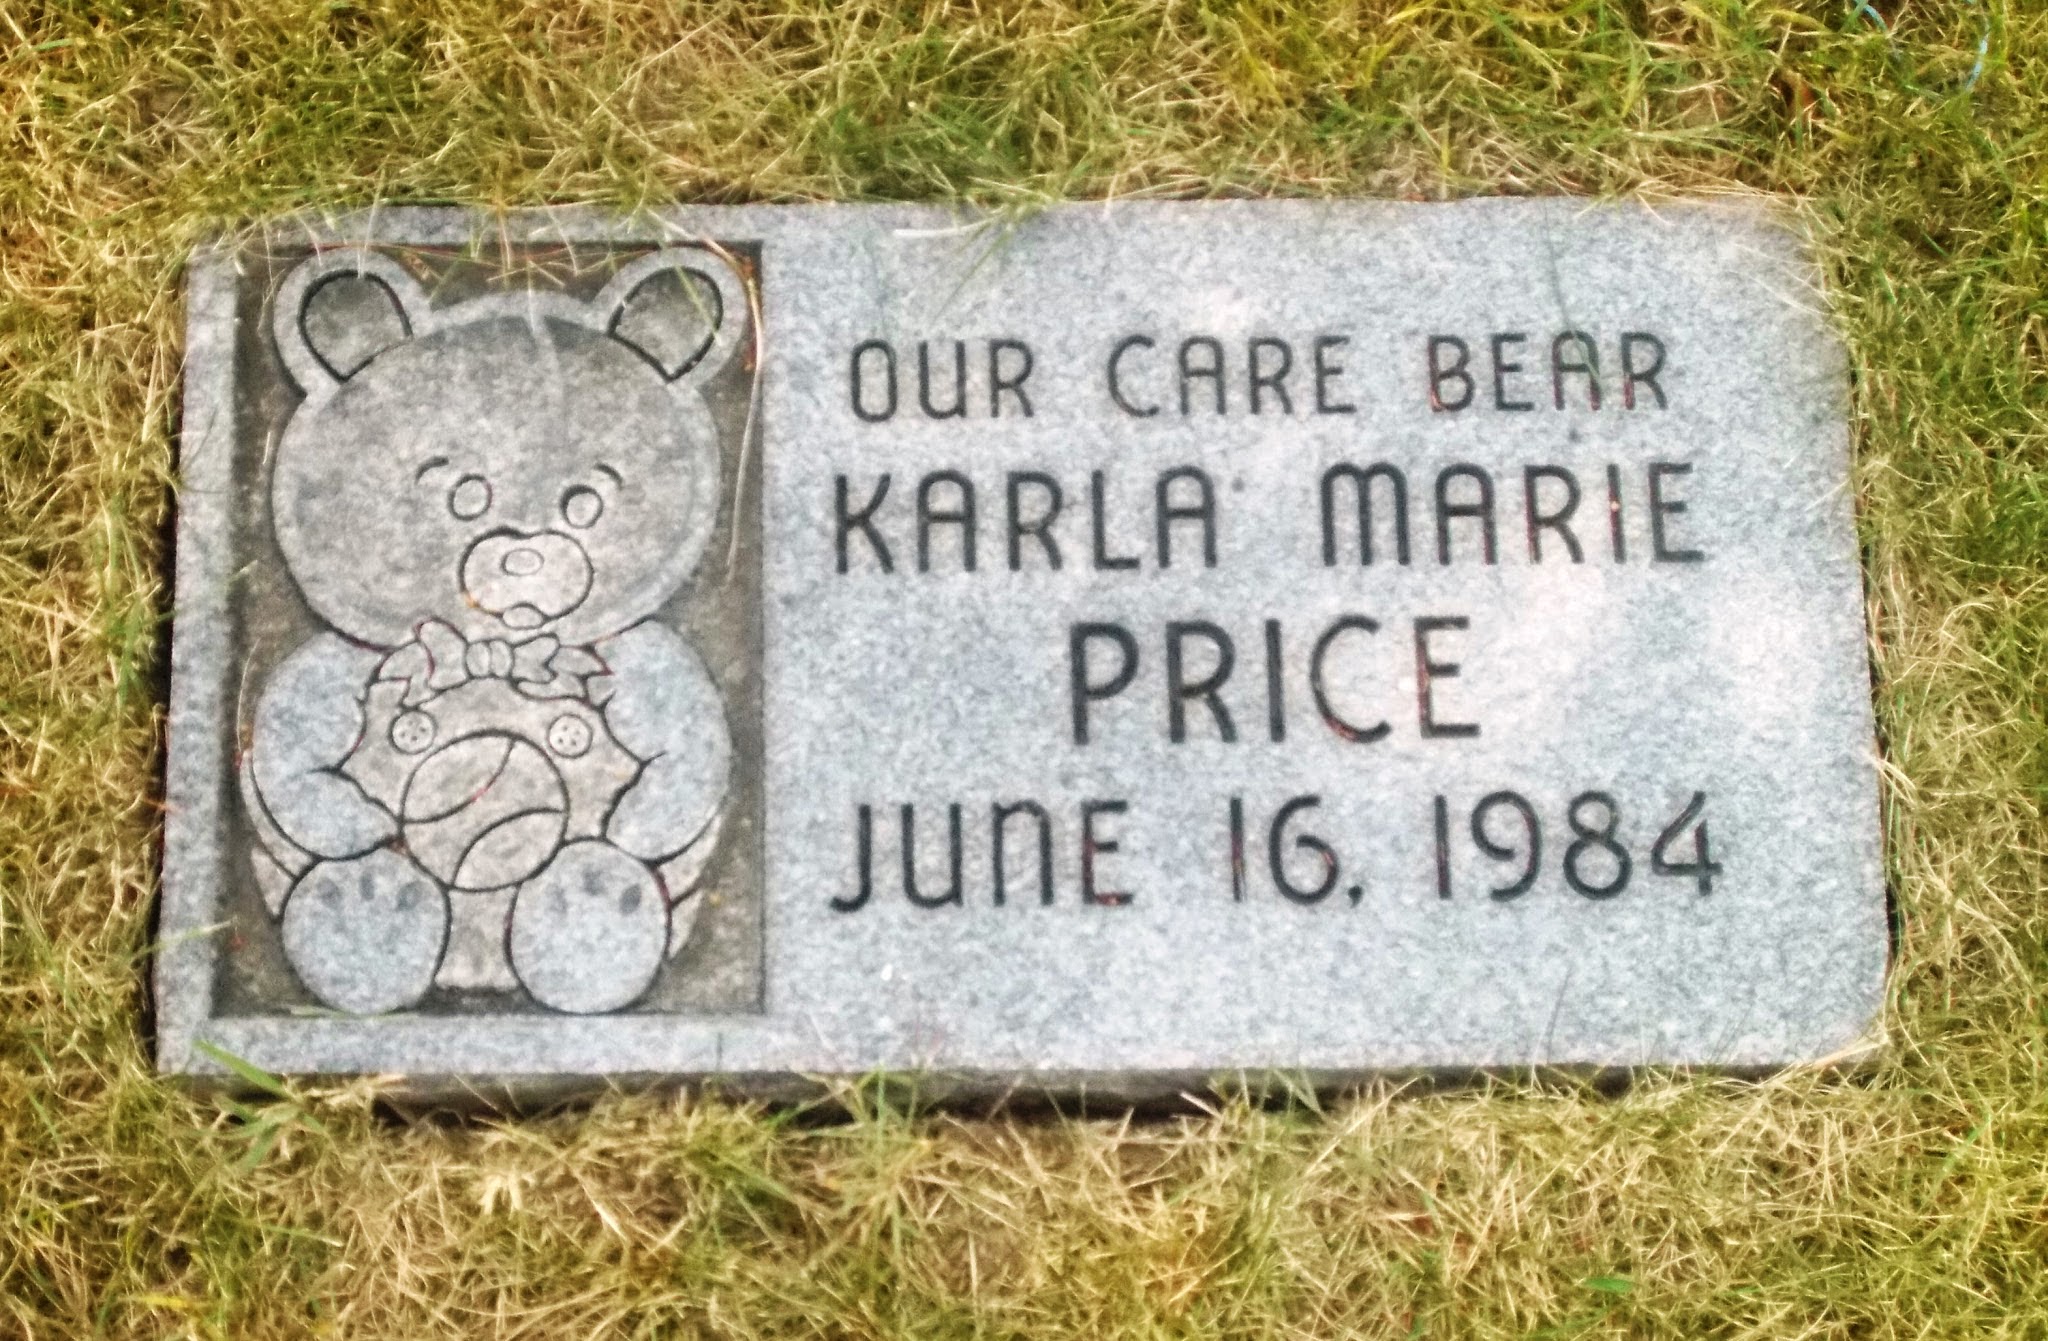 Karla Marie Price